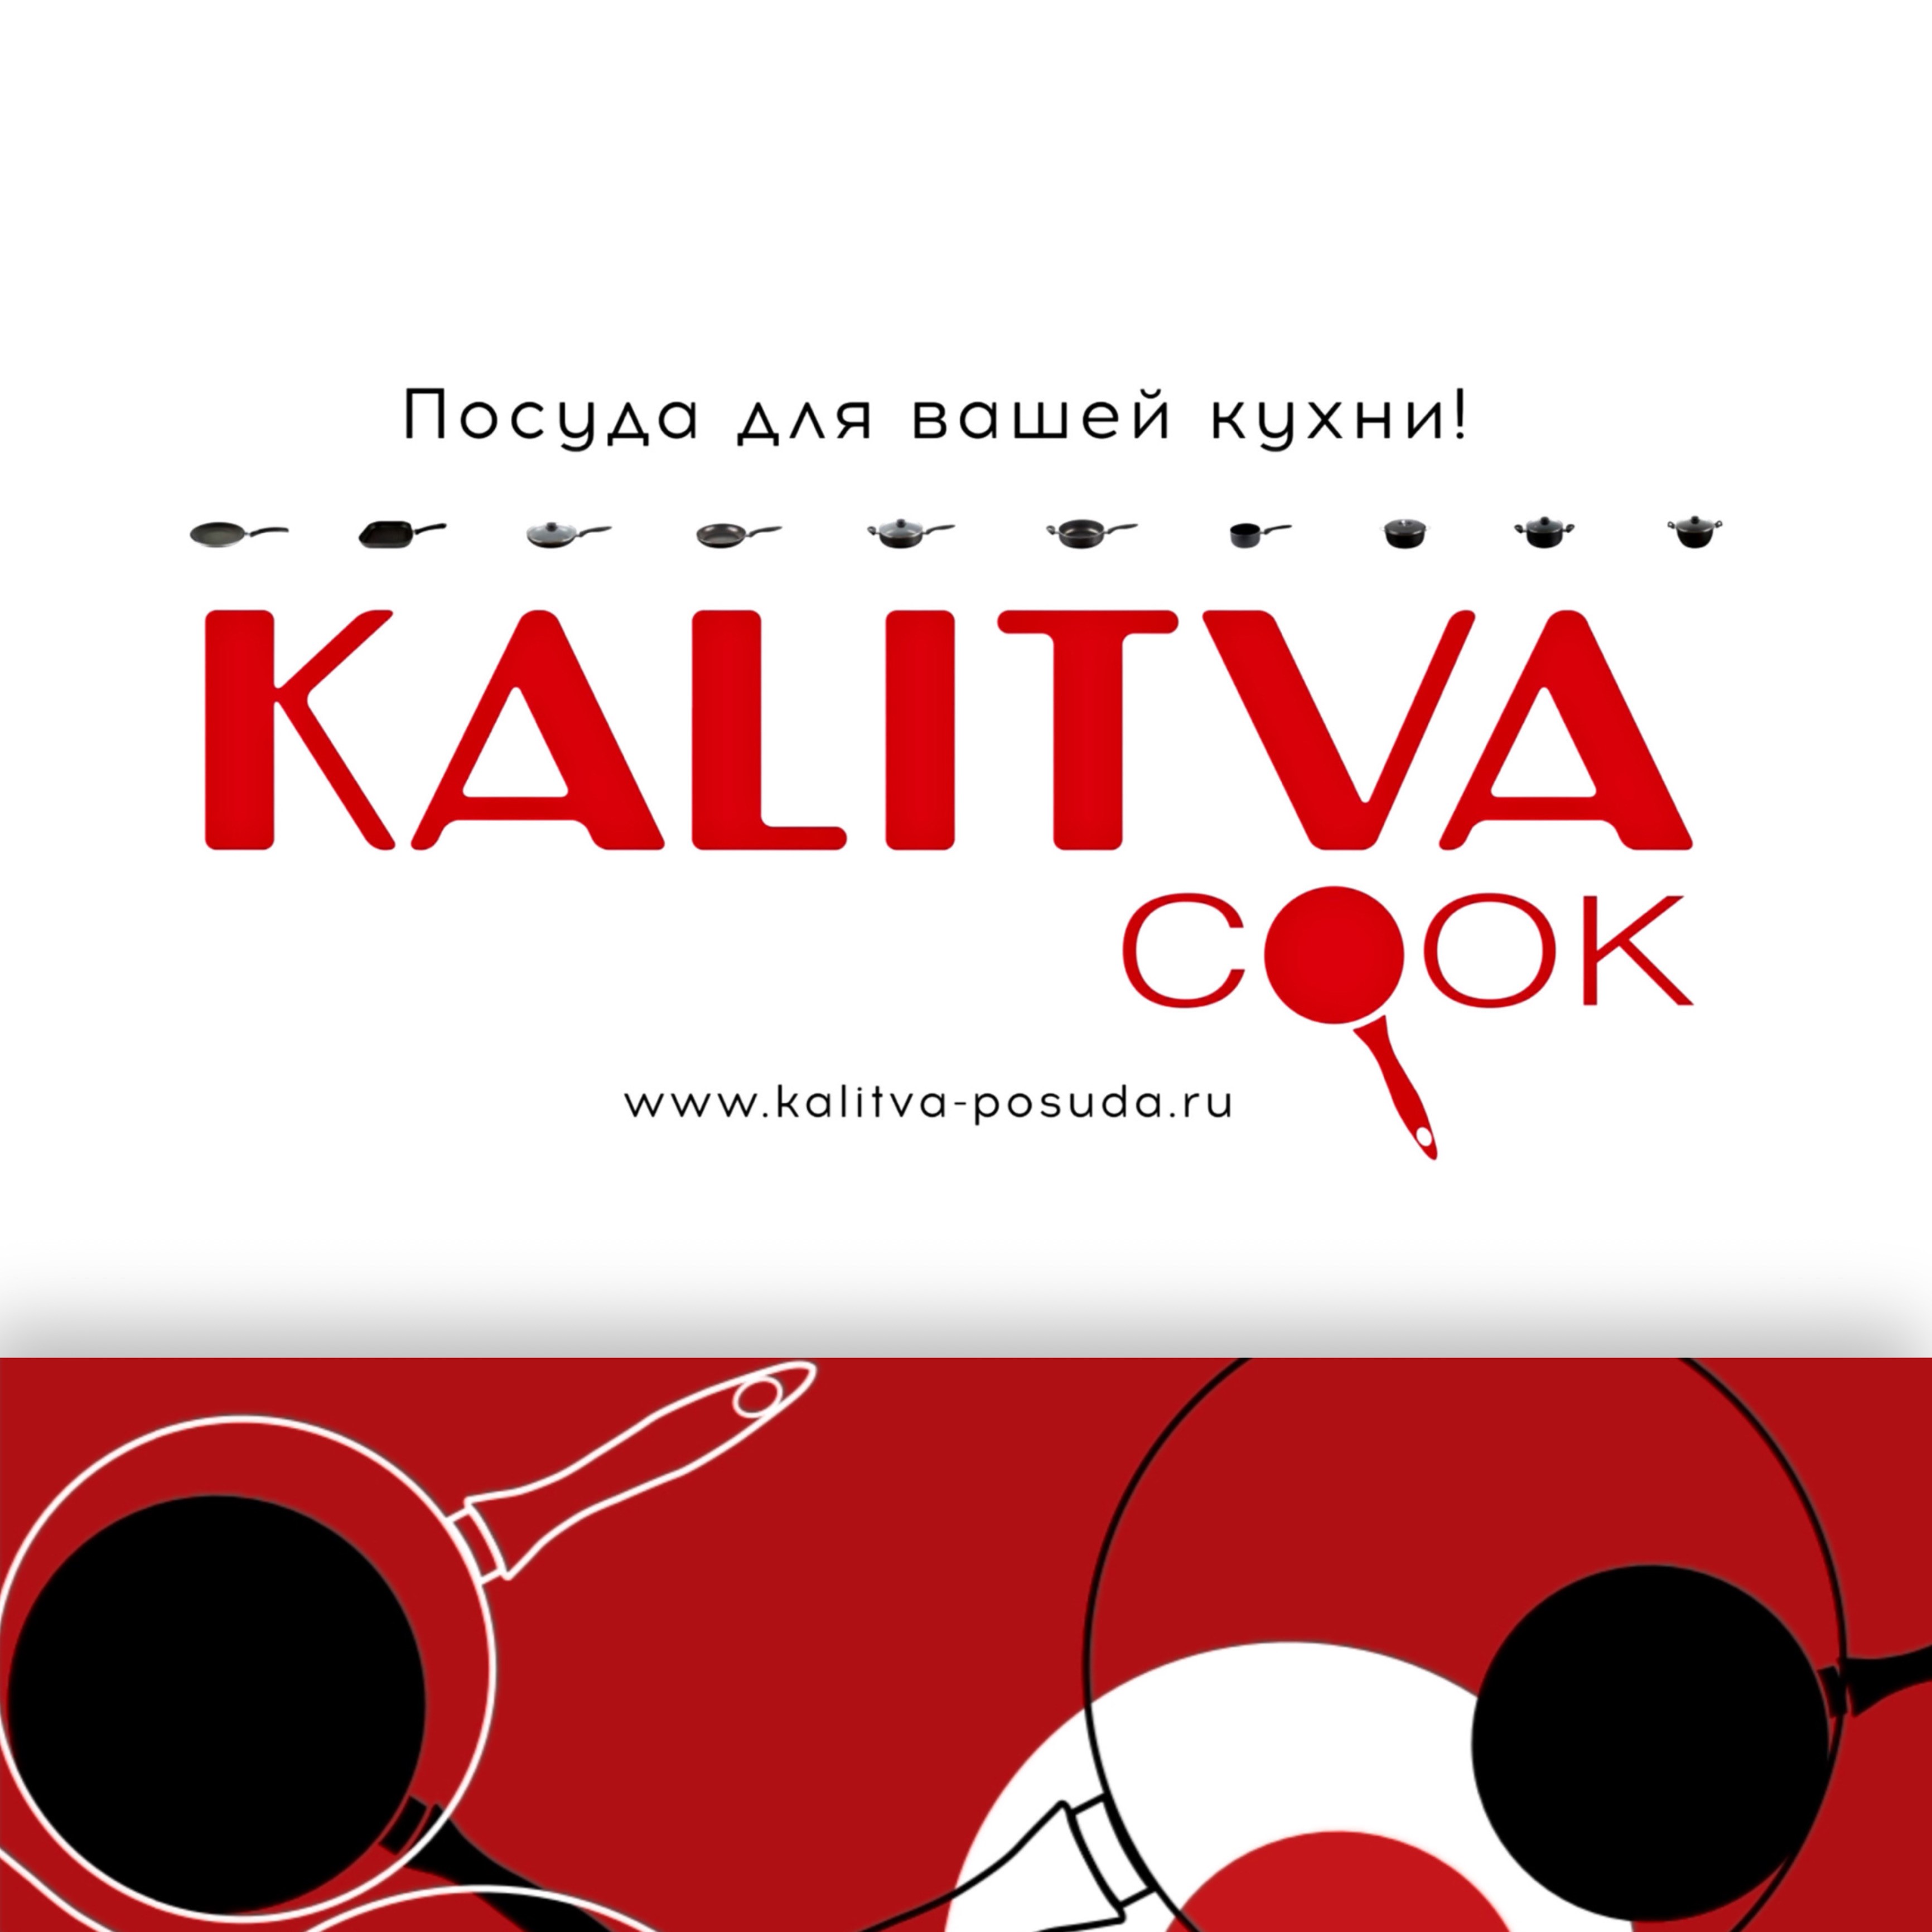 Торговая марка «KALITVA» - один из лидеров российского рынка .